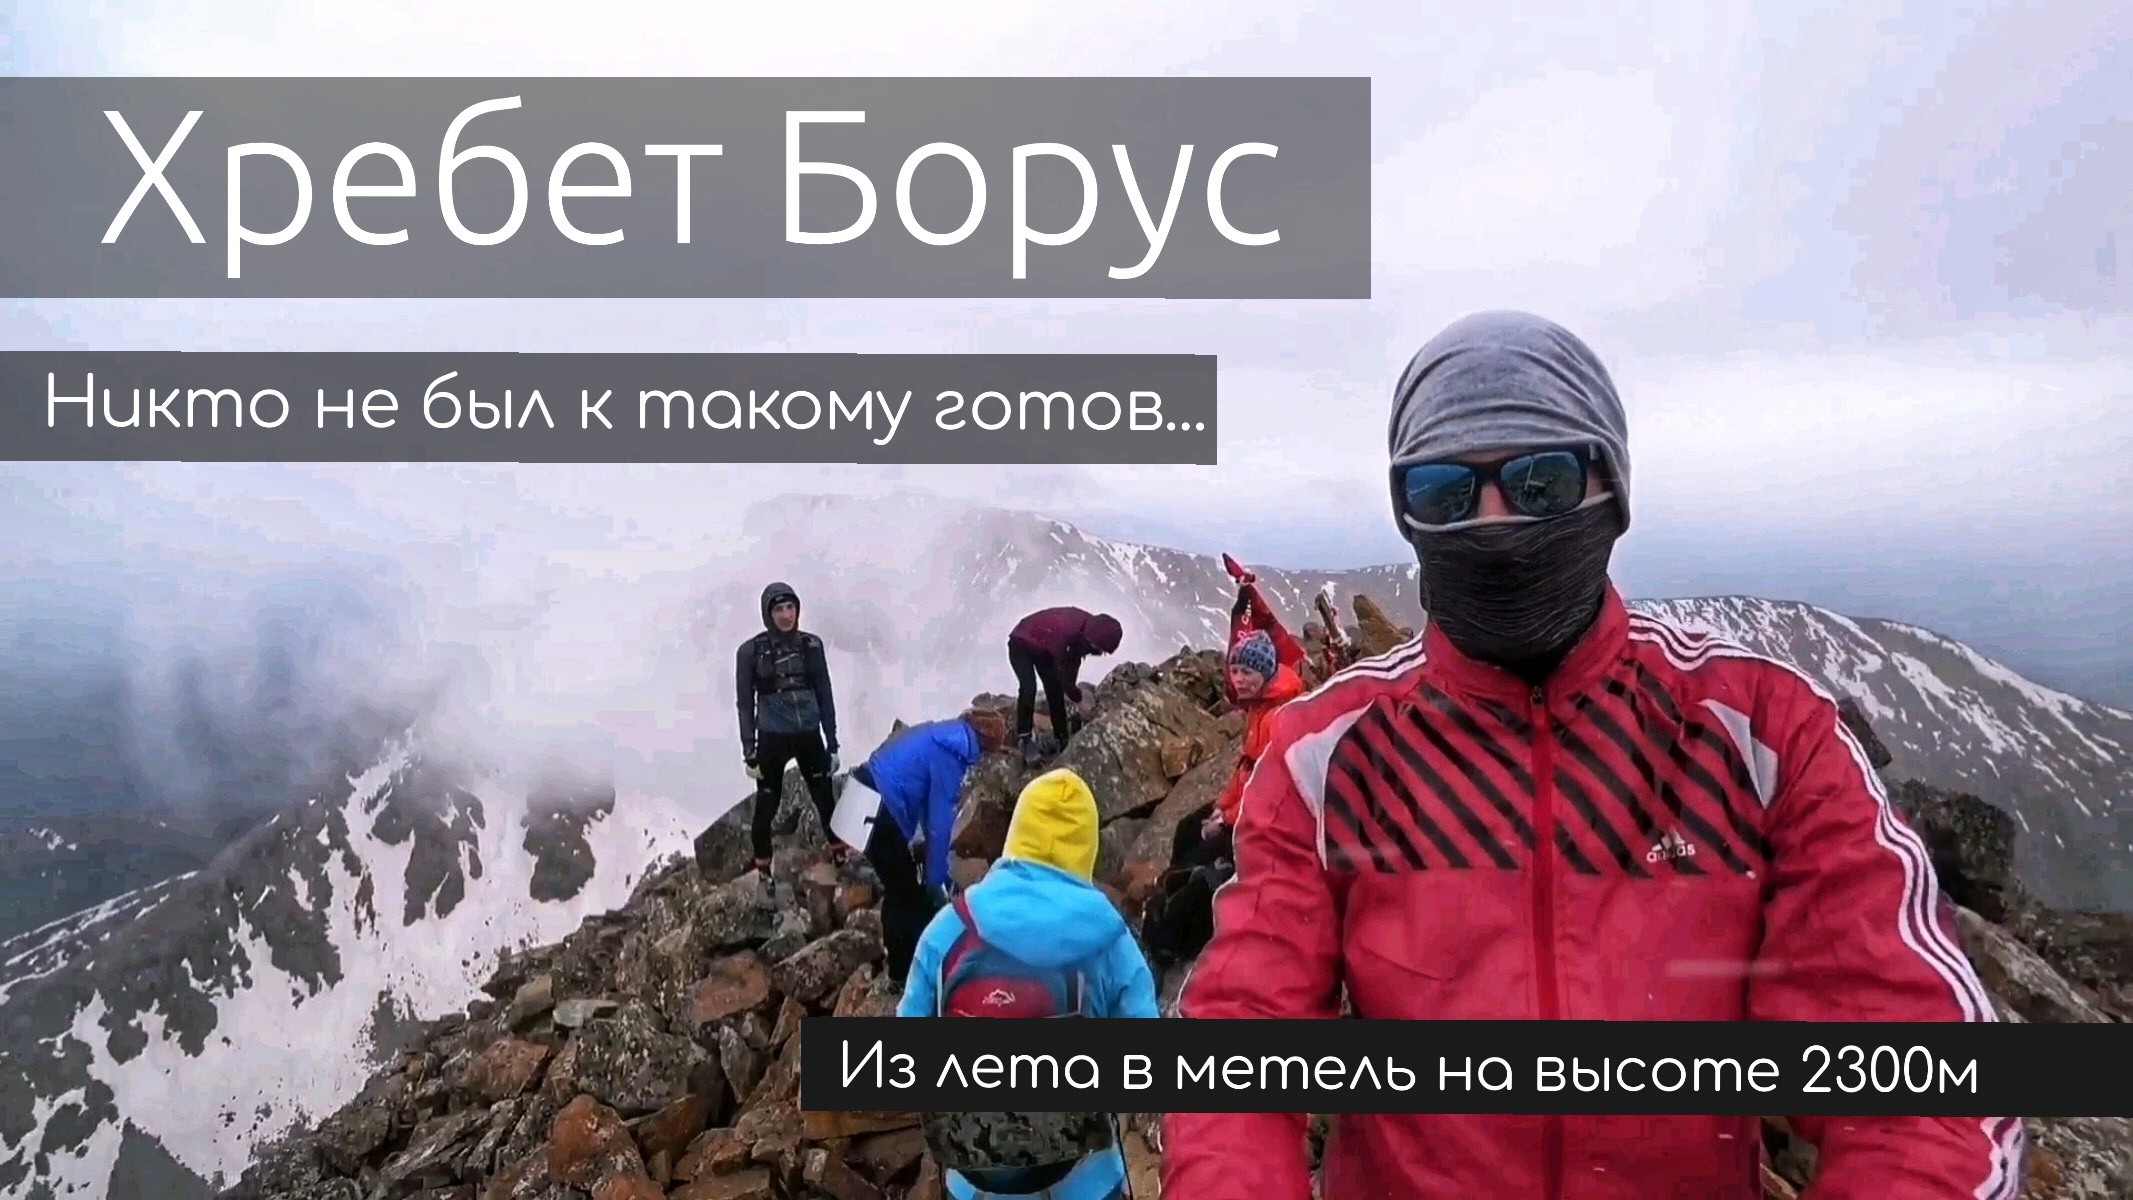 Восхождение на Хребет Борус | Западный Саян | Снежная Метель в июне на высоте 2300м